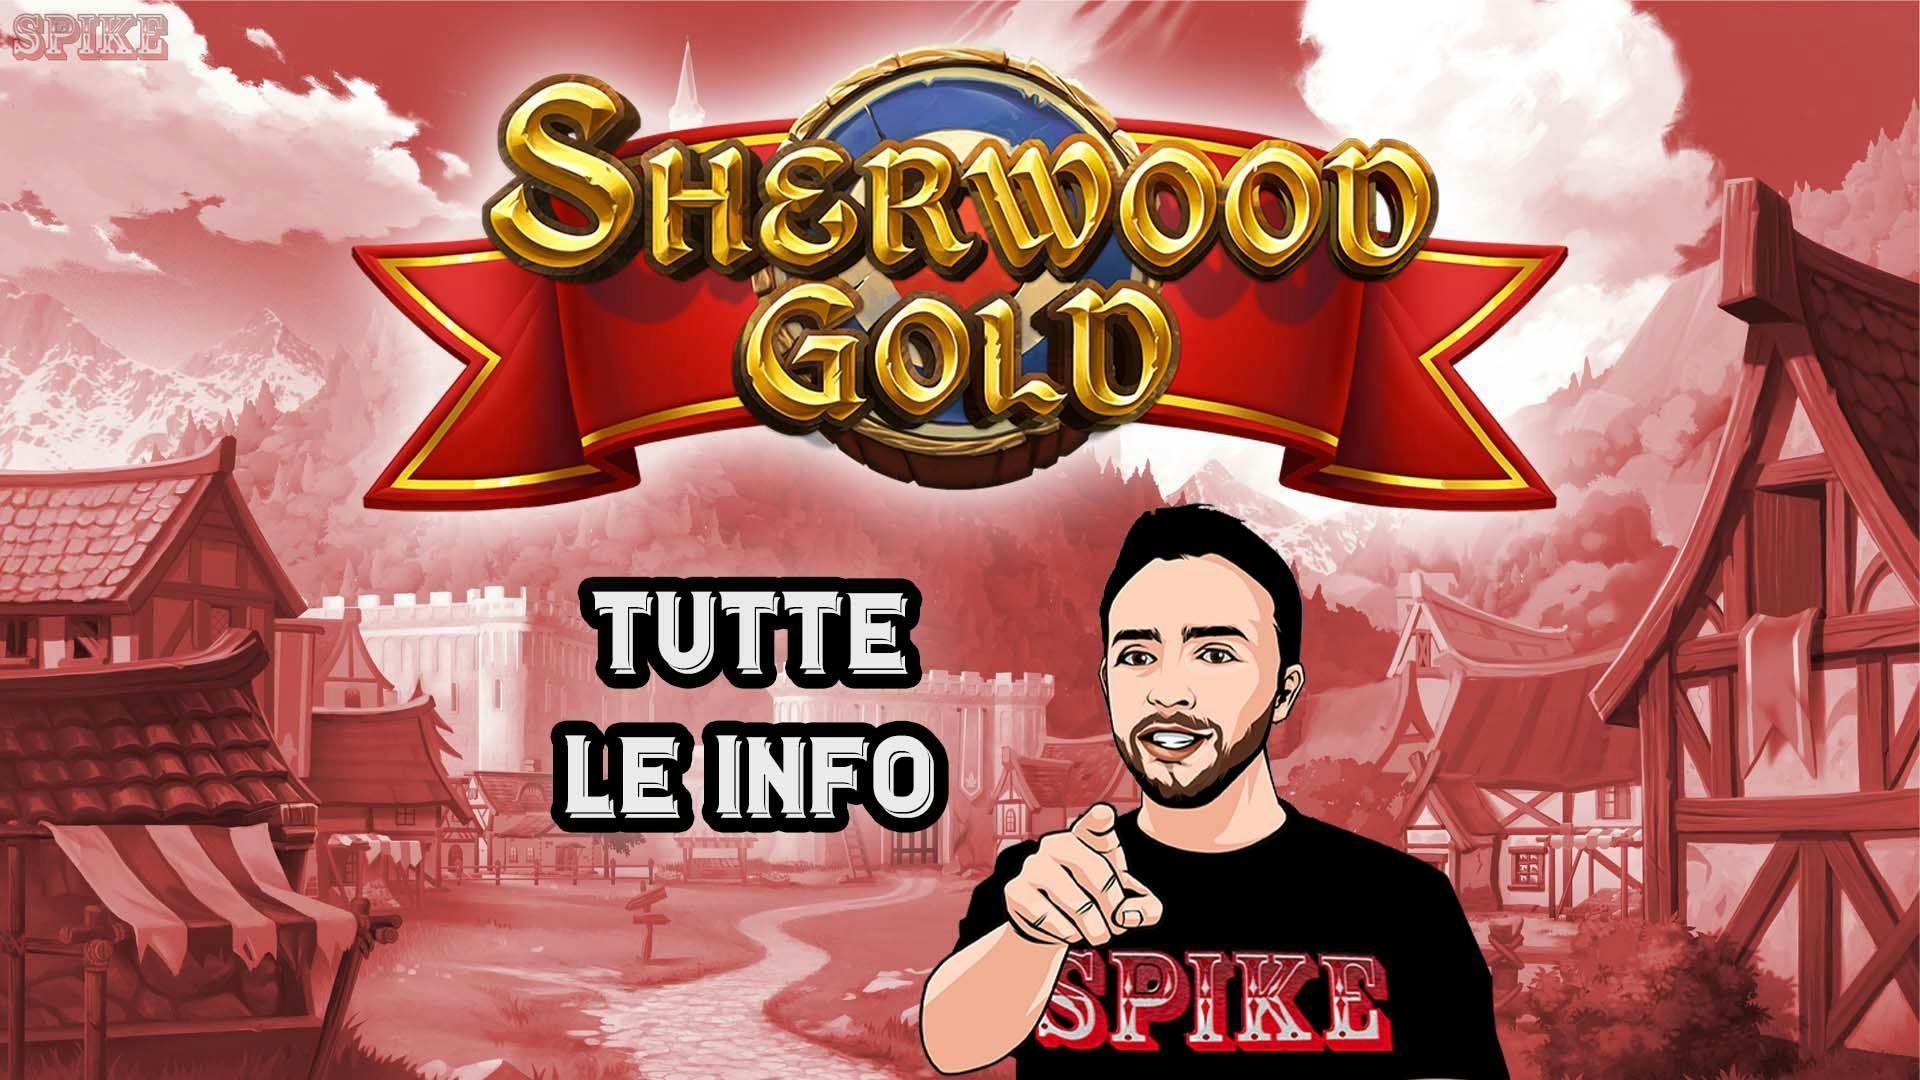 Sherwood Gold Nuova Slot